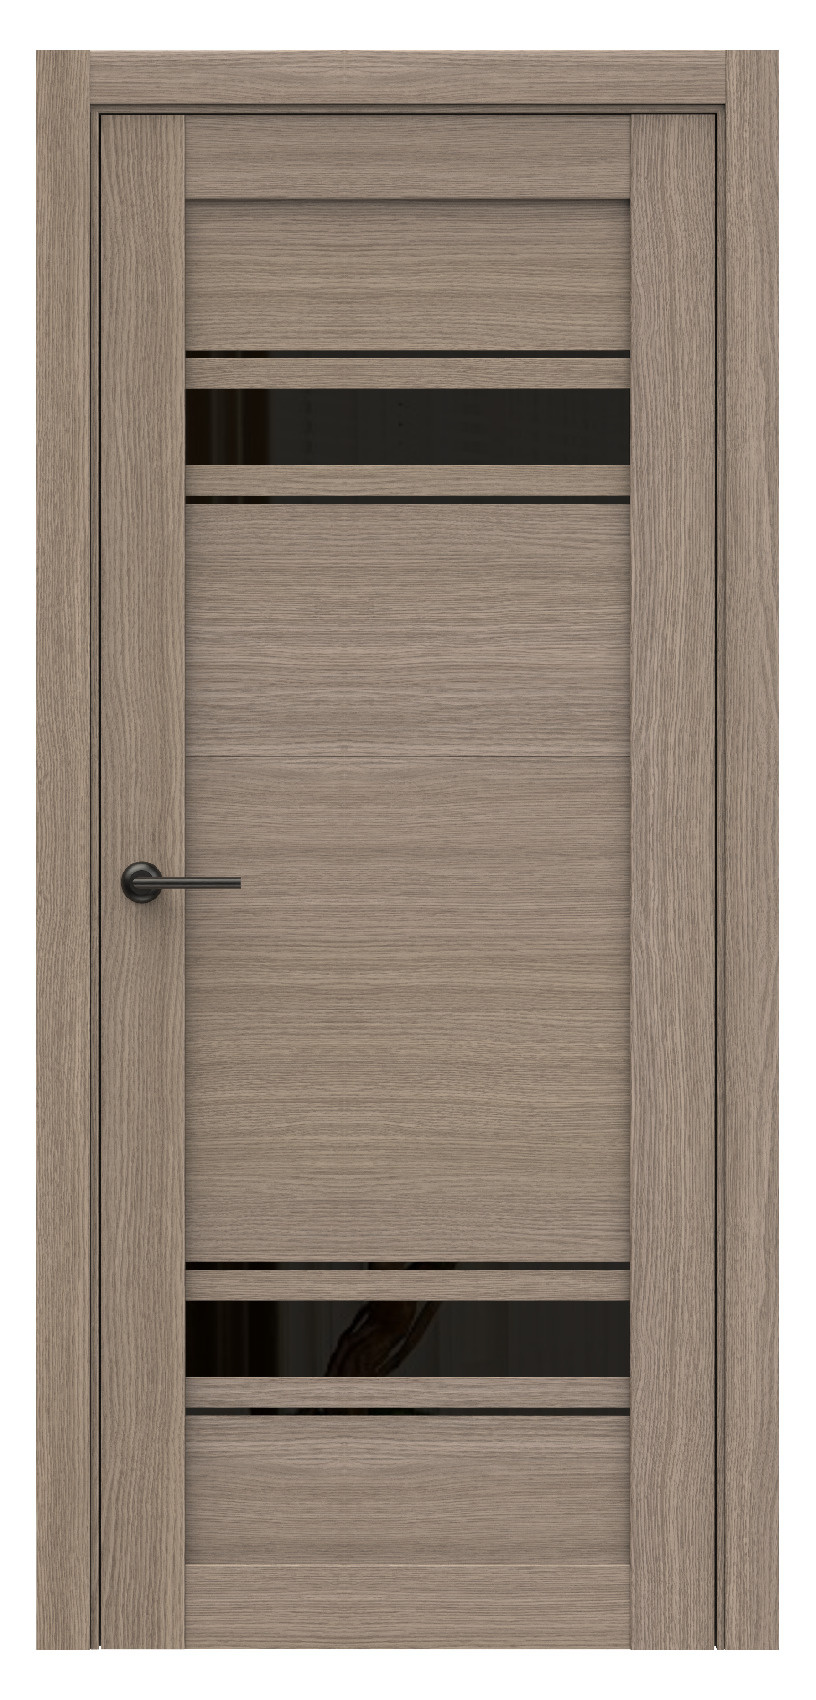 Questdoors Межкомнатная дверь Q75, арт. 17495 - фото №1